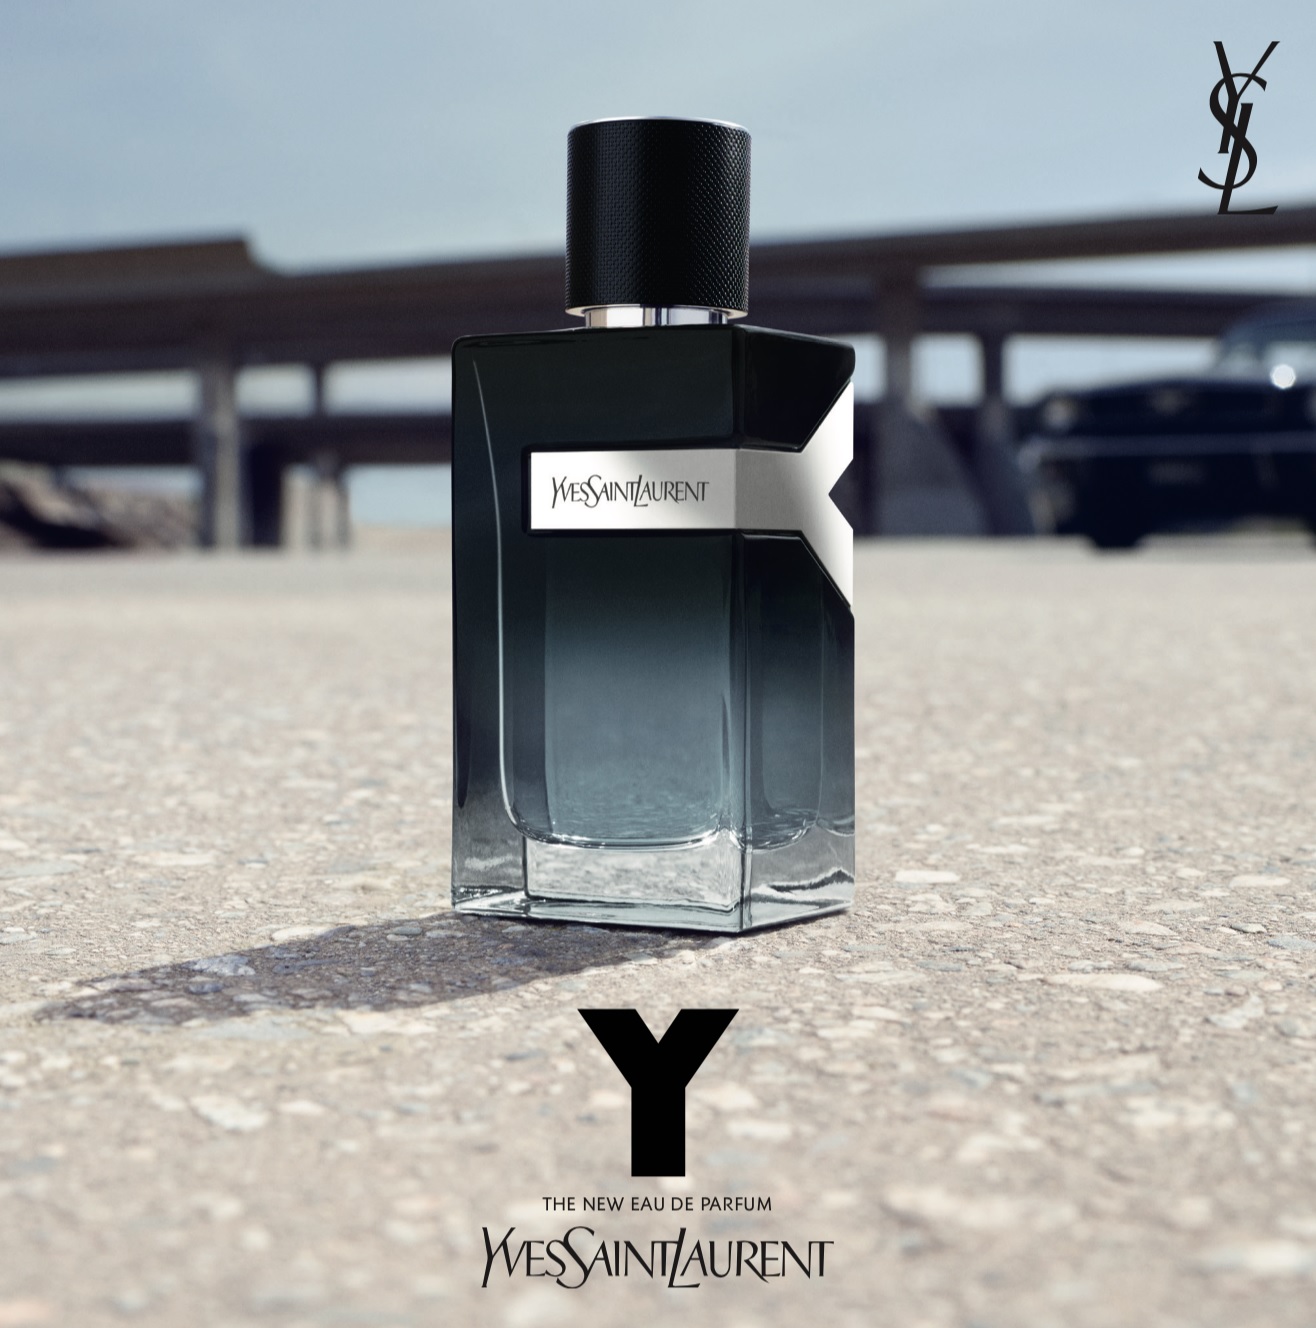 Y Eau de Parfum Yves Saint Laurent for men şişe commercila poster o.55671.jpg